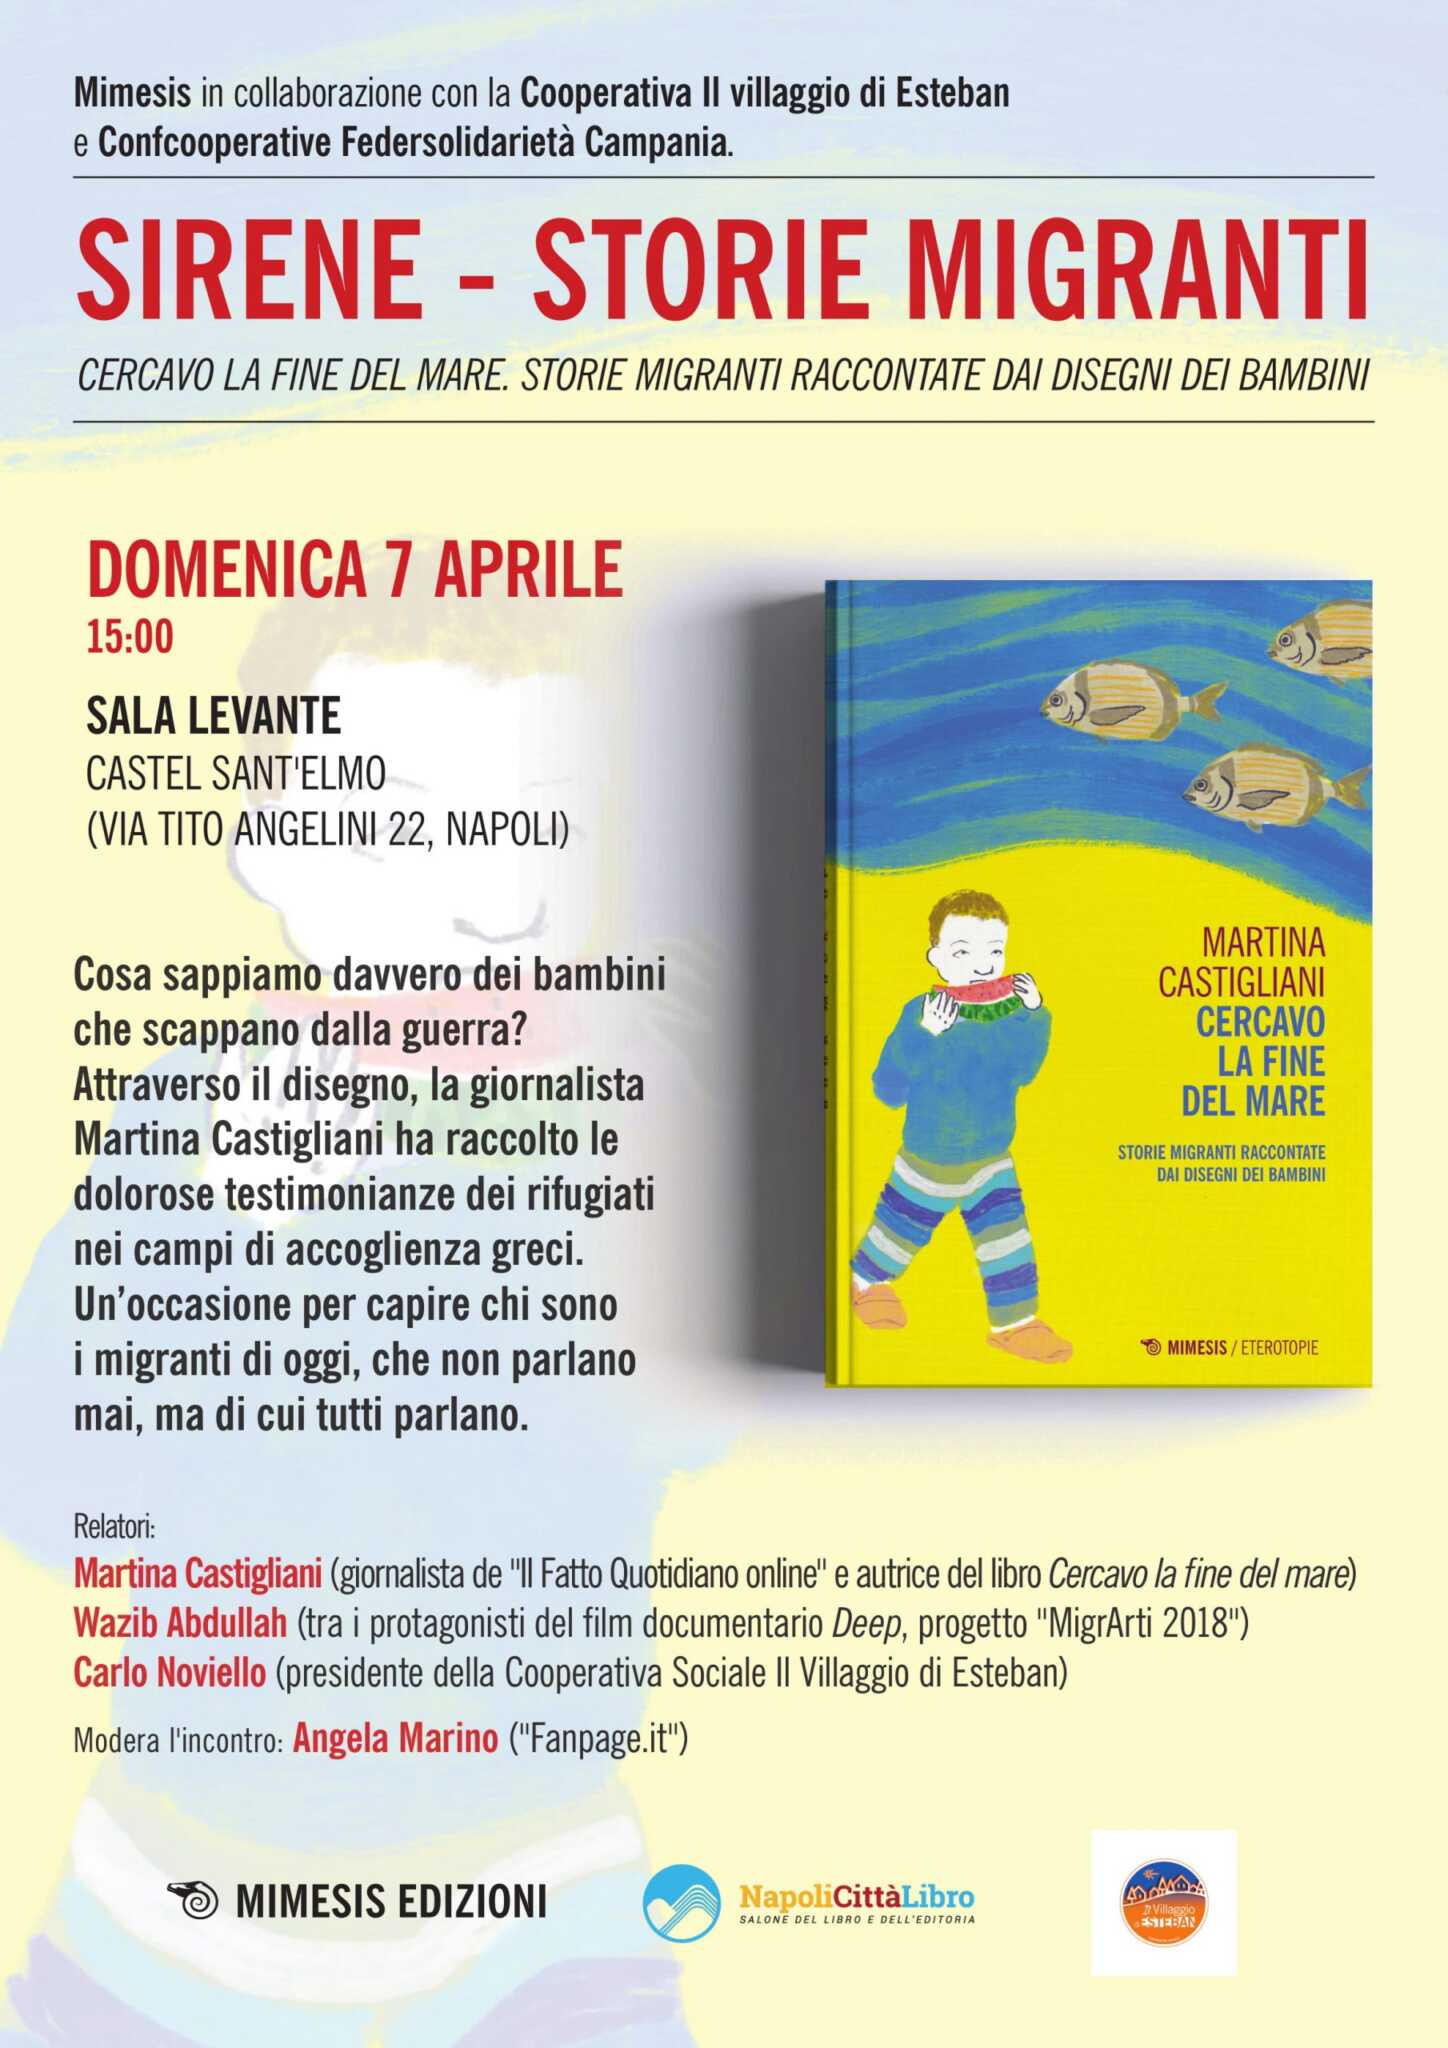 ‘Cercavo la fine del mare’, di Martina Castigliani. Presentazione a Napoli insieme alla cooperativa sociale di Salerno ‘Il villaggio di Esteban’